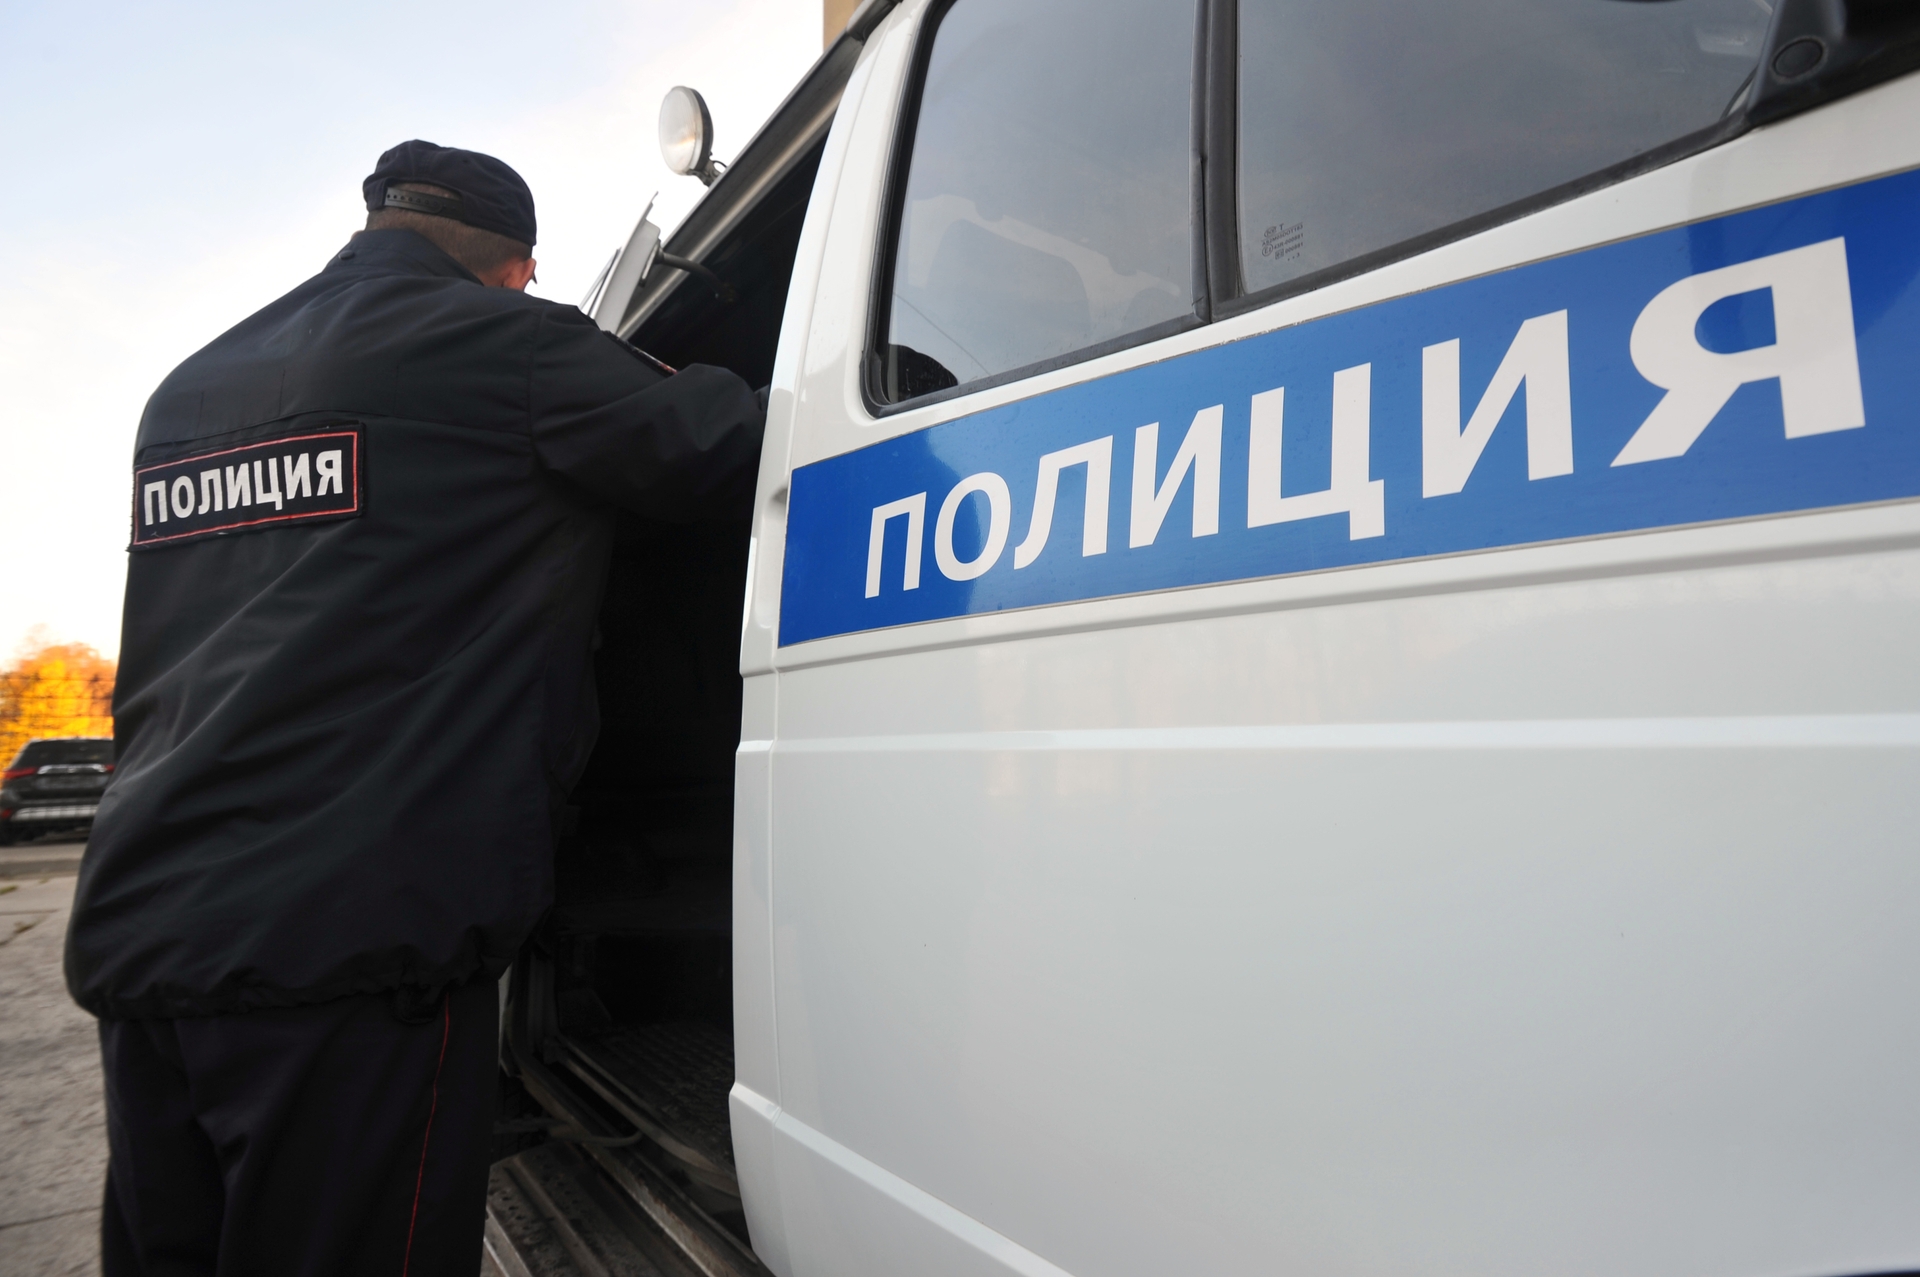 Житель Подмосковья нашел банковскую карту и попал под уголовное дело